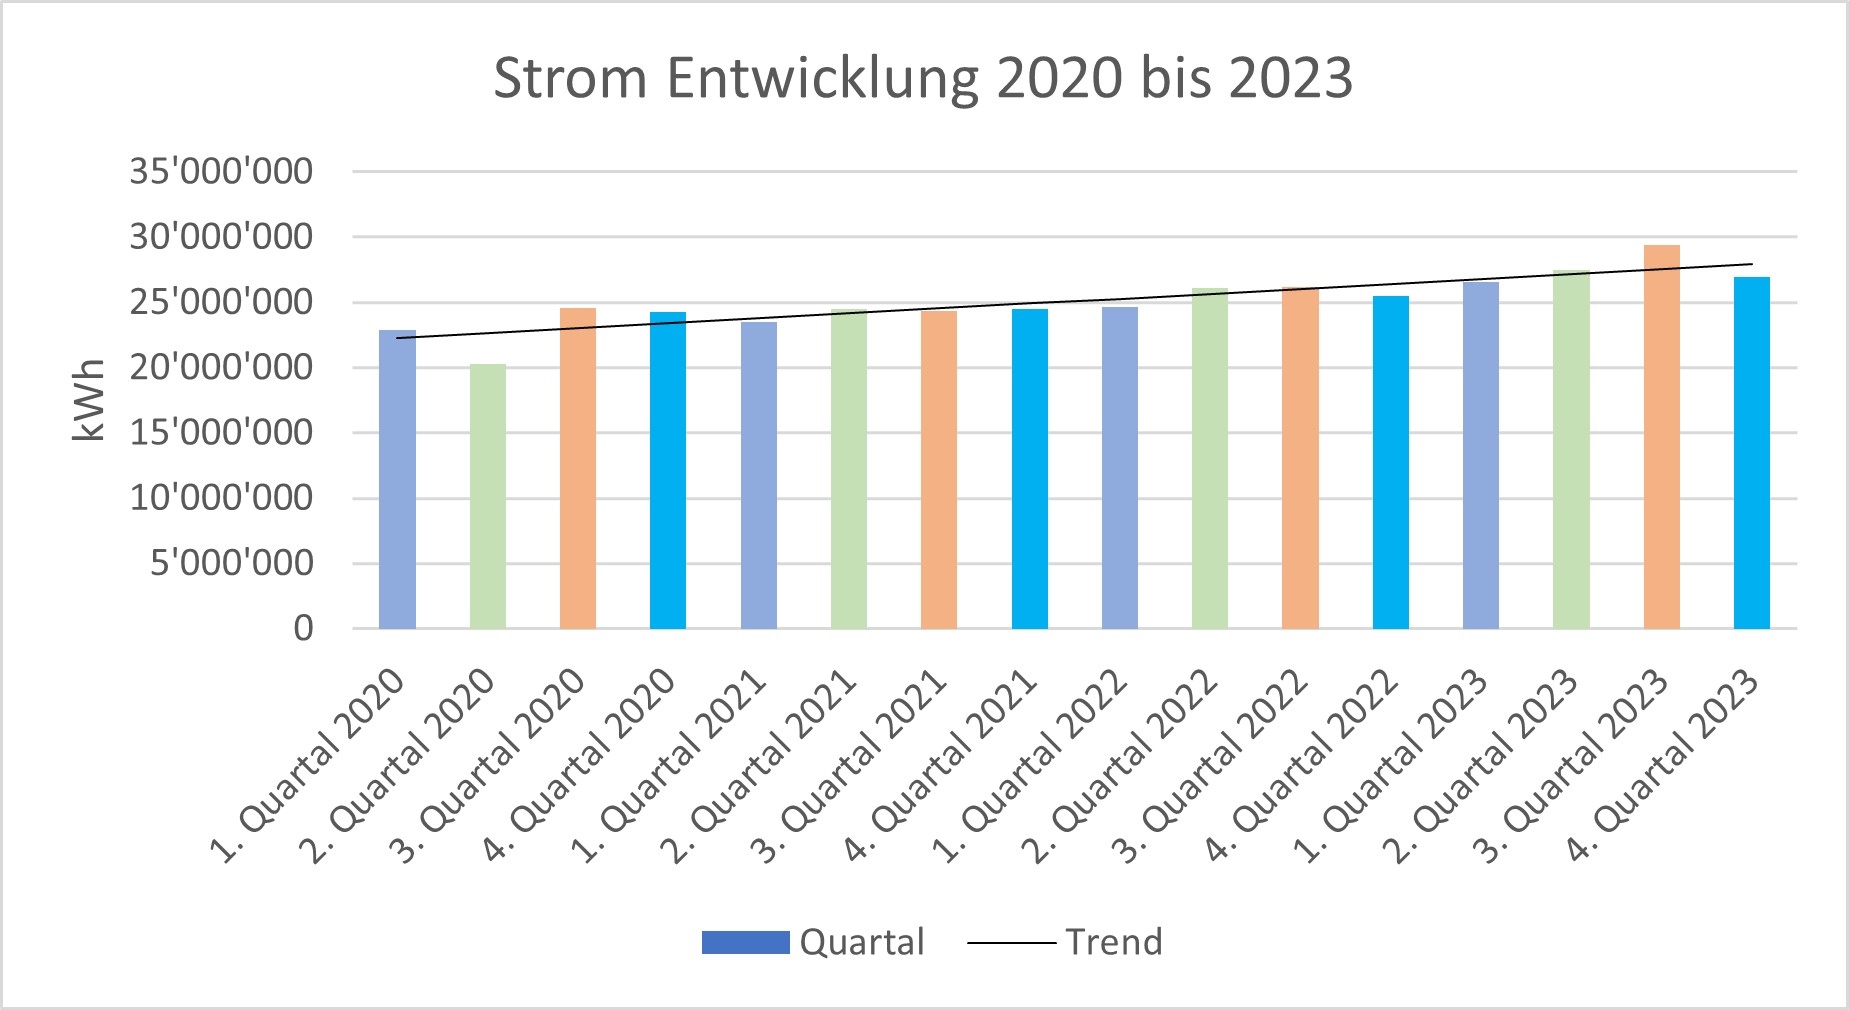 Vergr?sserte Ansicht: Die Grafik zeigt den summierten Strombezug der ETH Zürich auf dem Camous Hönggerberg, auf dem 365ֱ_365Ͷע-Ͷ Zentrum sowie in Schwerzenbach und Lindau-Eschikon für alle Quartale im Zeitraum 2020 bis 2023.